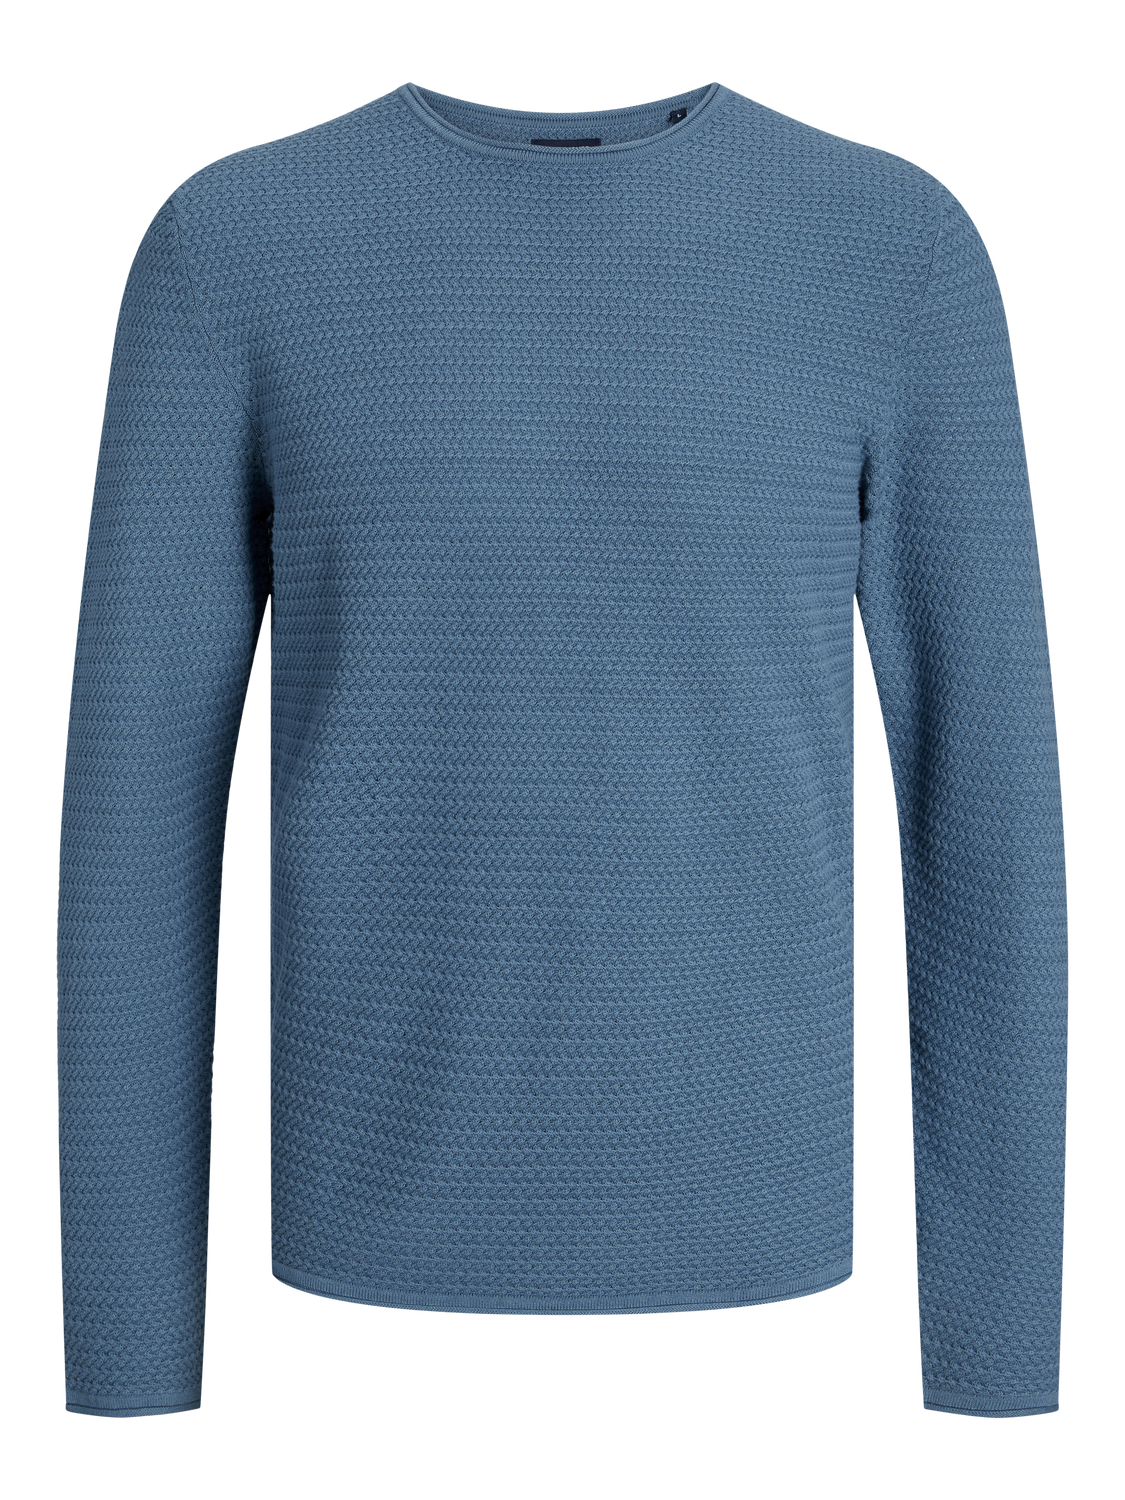 Jersey básico de punto azul - JPRBLUMIGUEL